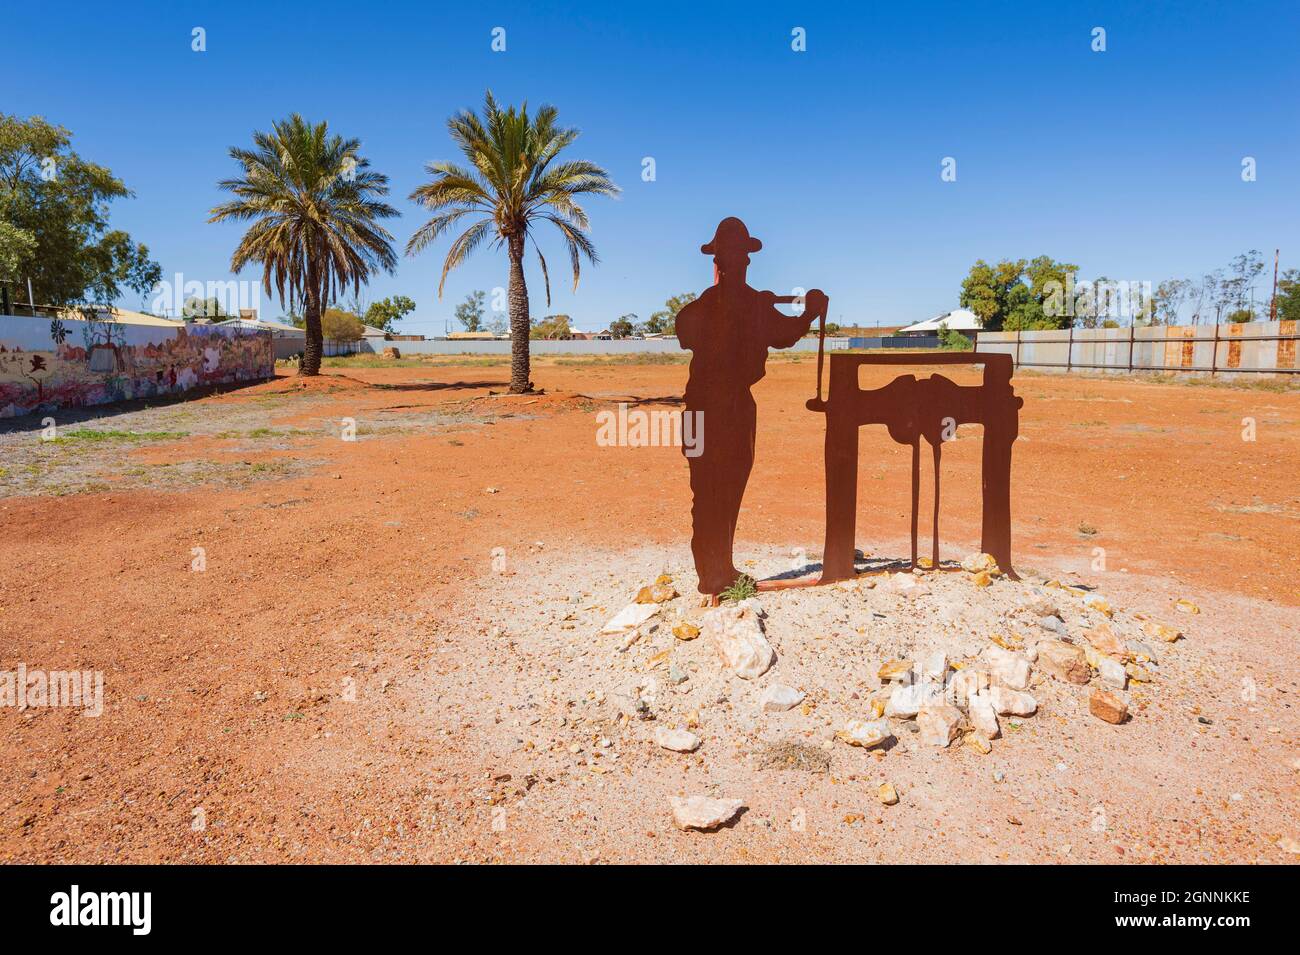 Metallkunstwerke eines alten goldminers und seines Brunnens in der kleinen ländlichen Stadt Cue, Region Murchison, Western Australia, Australien Stockfoto